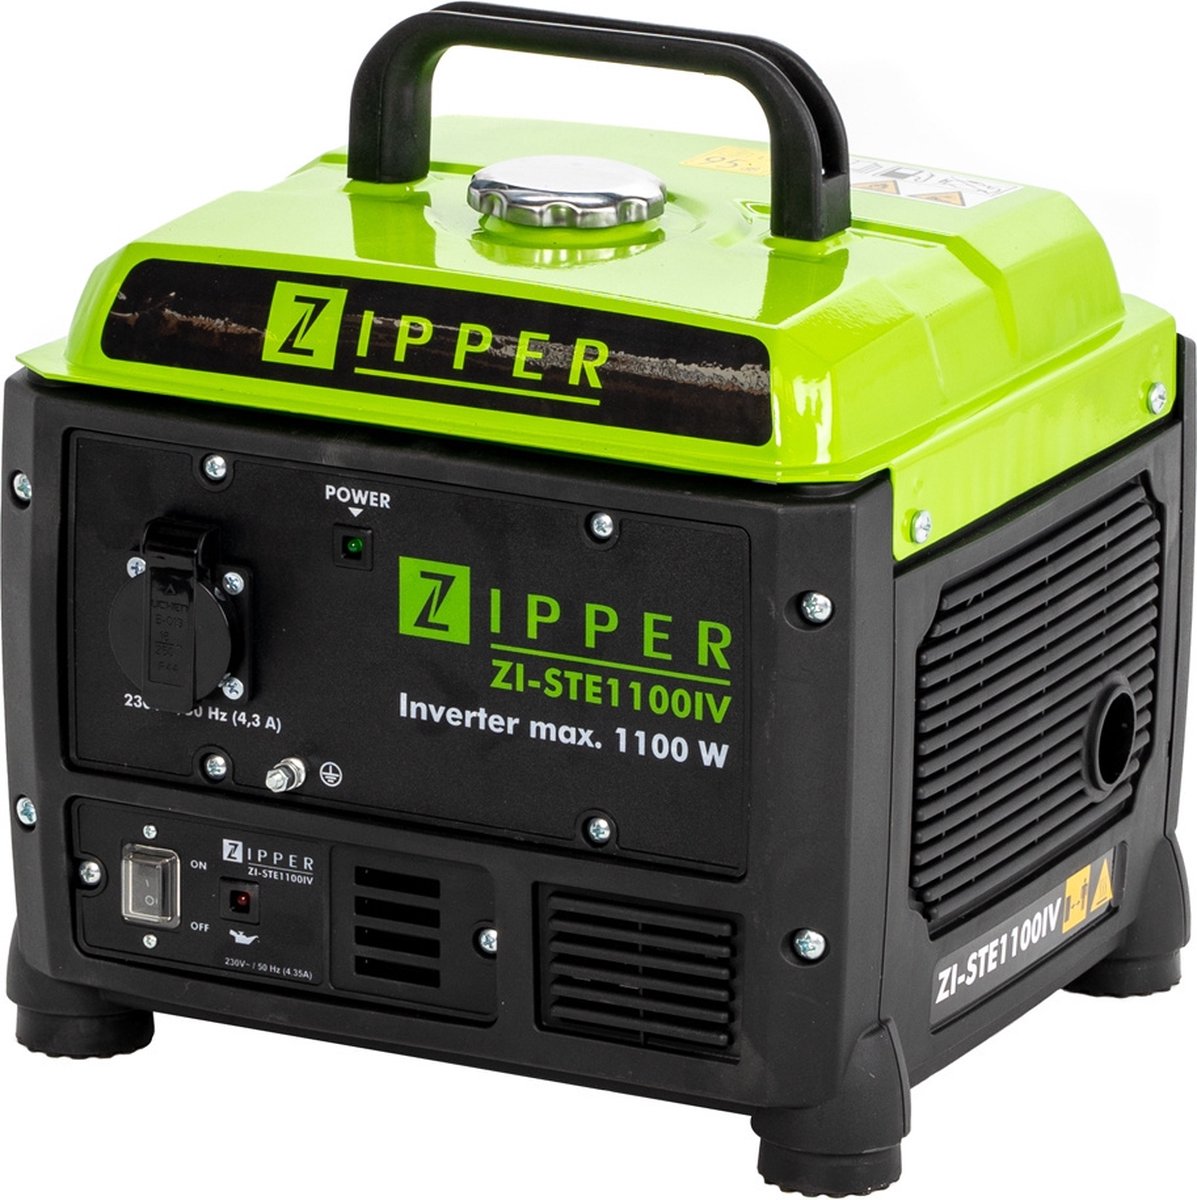 Zipper generator benzine - 1300W - 4.2L - Zipper